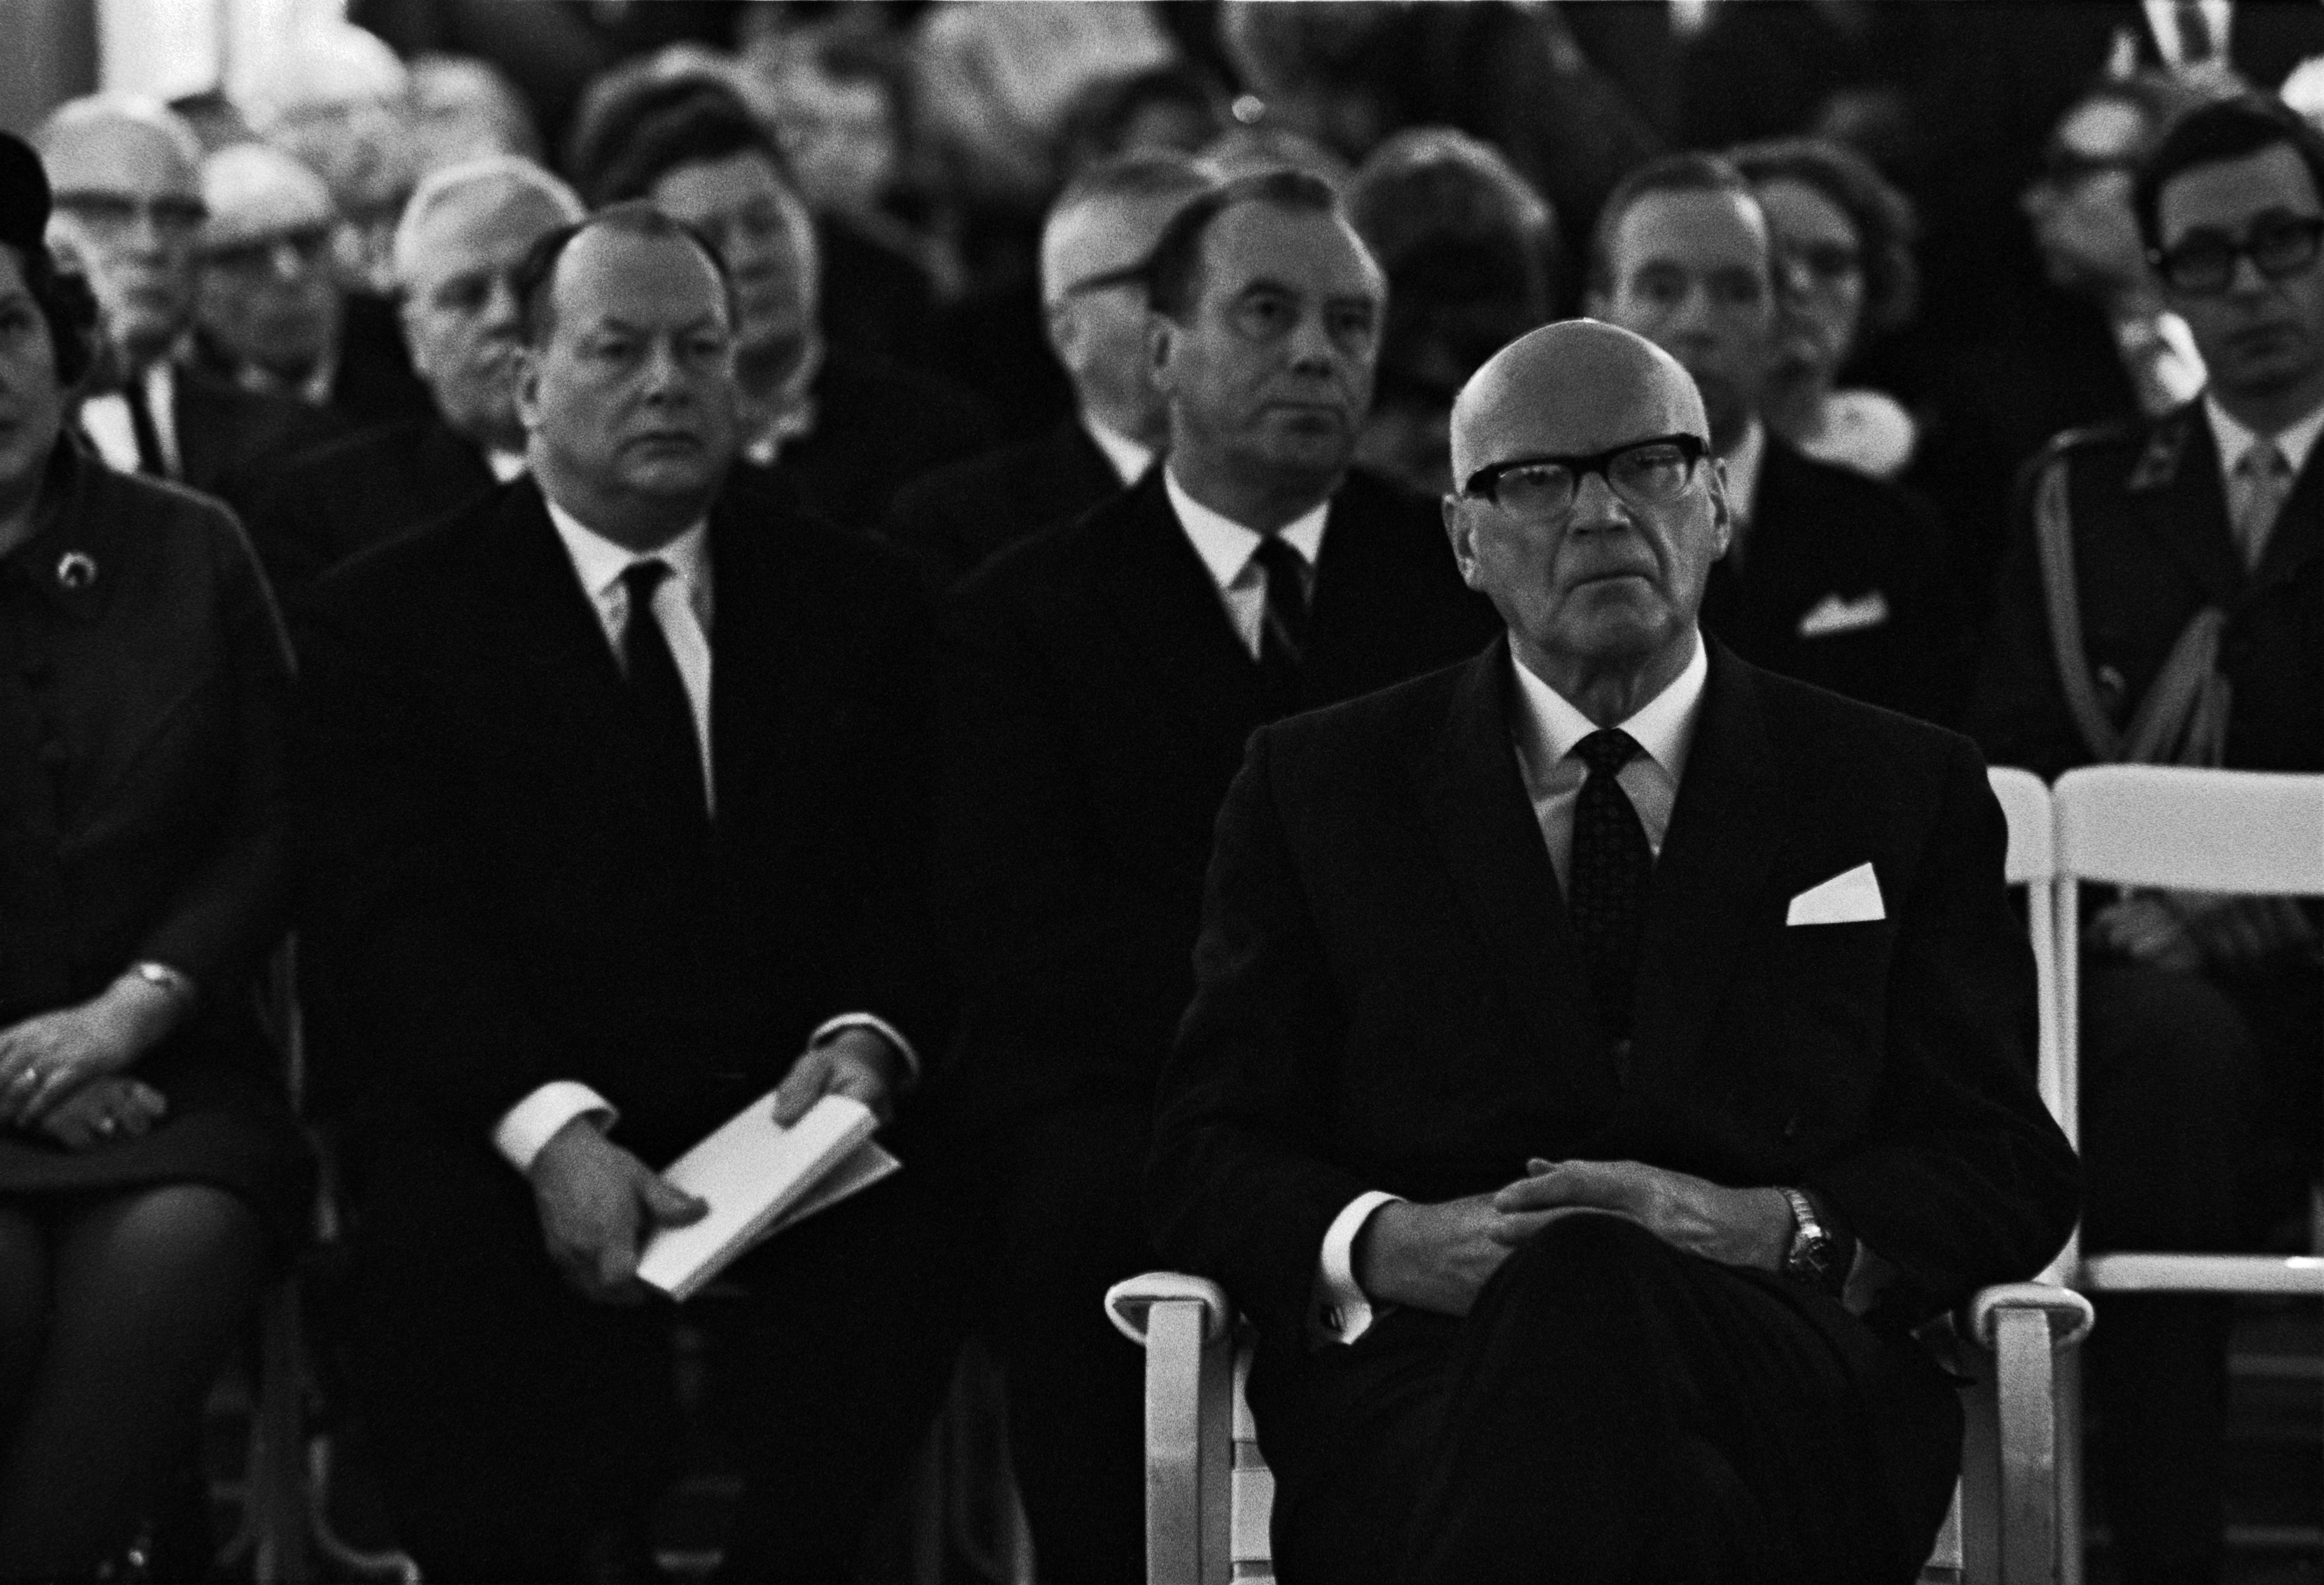 Uhro Kekkonen neve korszakot jelent a finn politikában